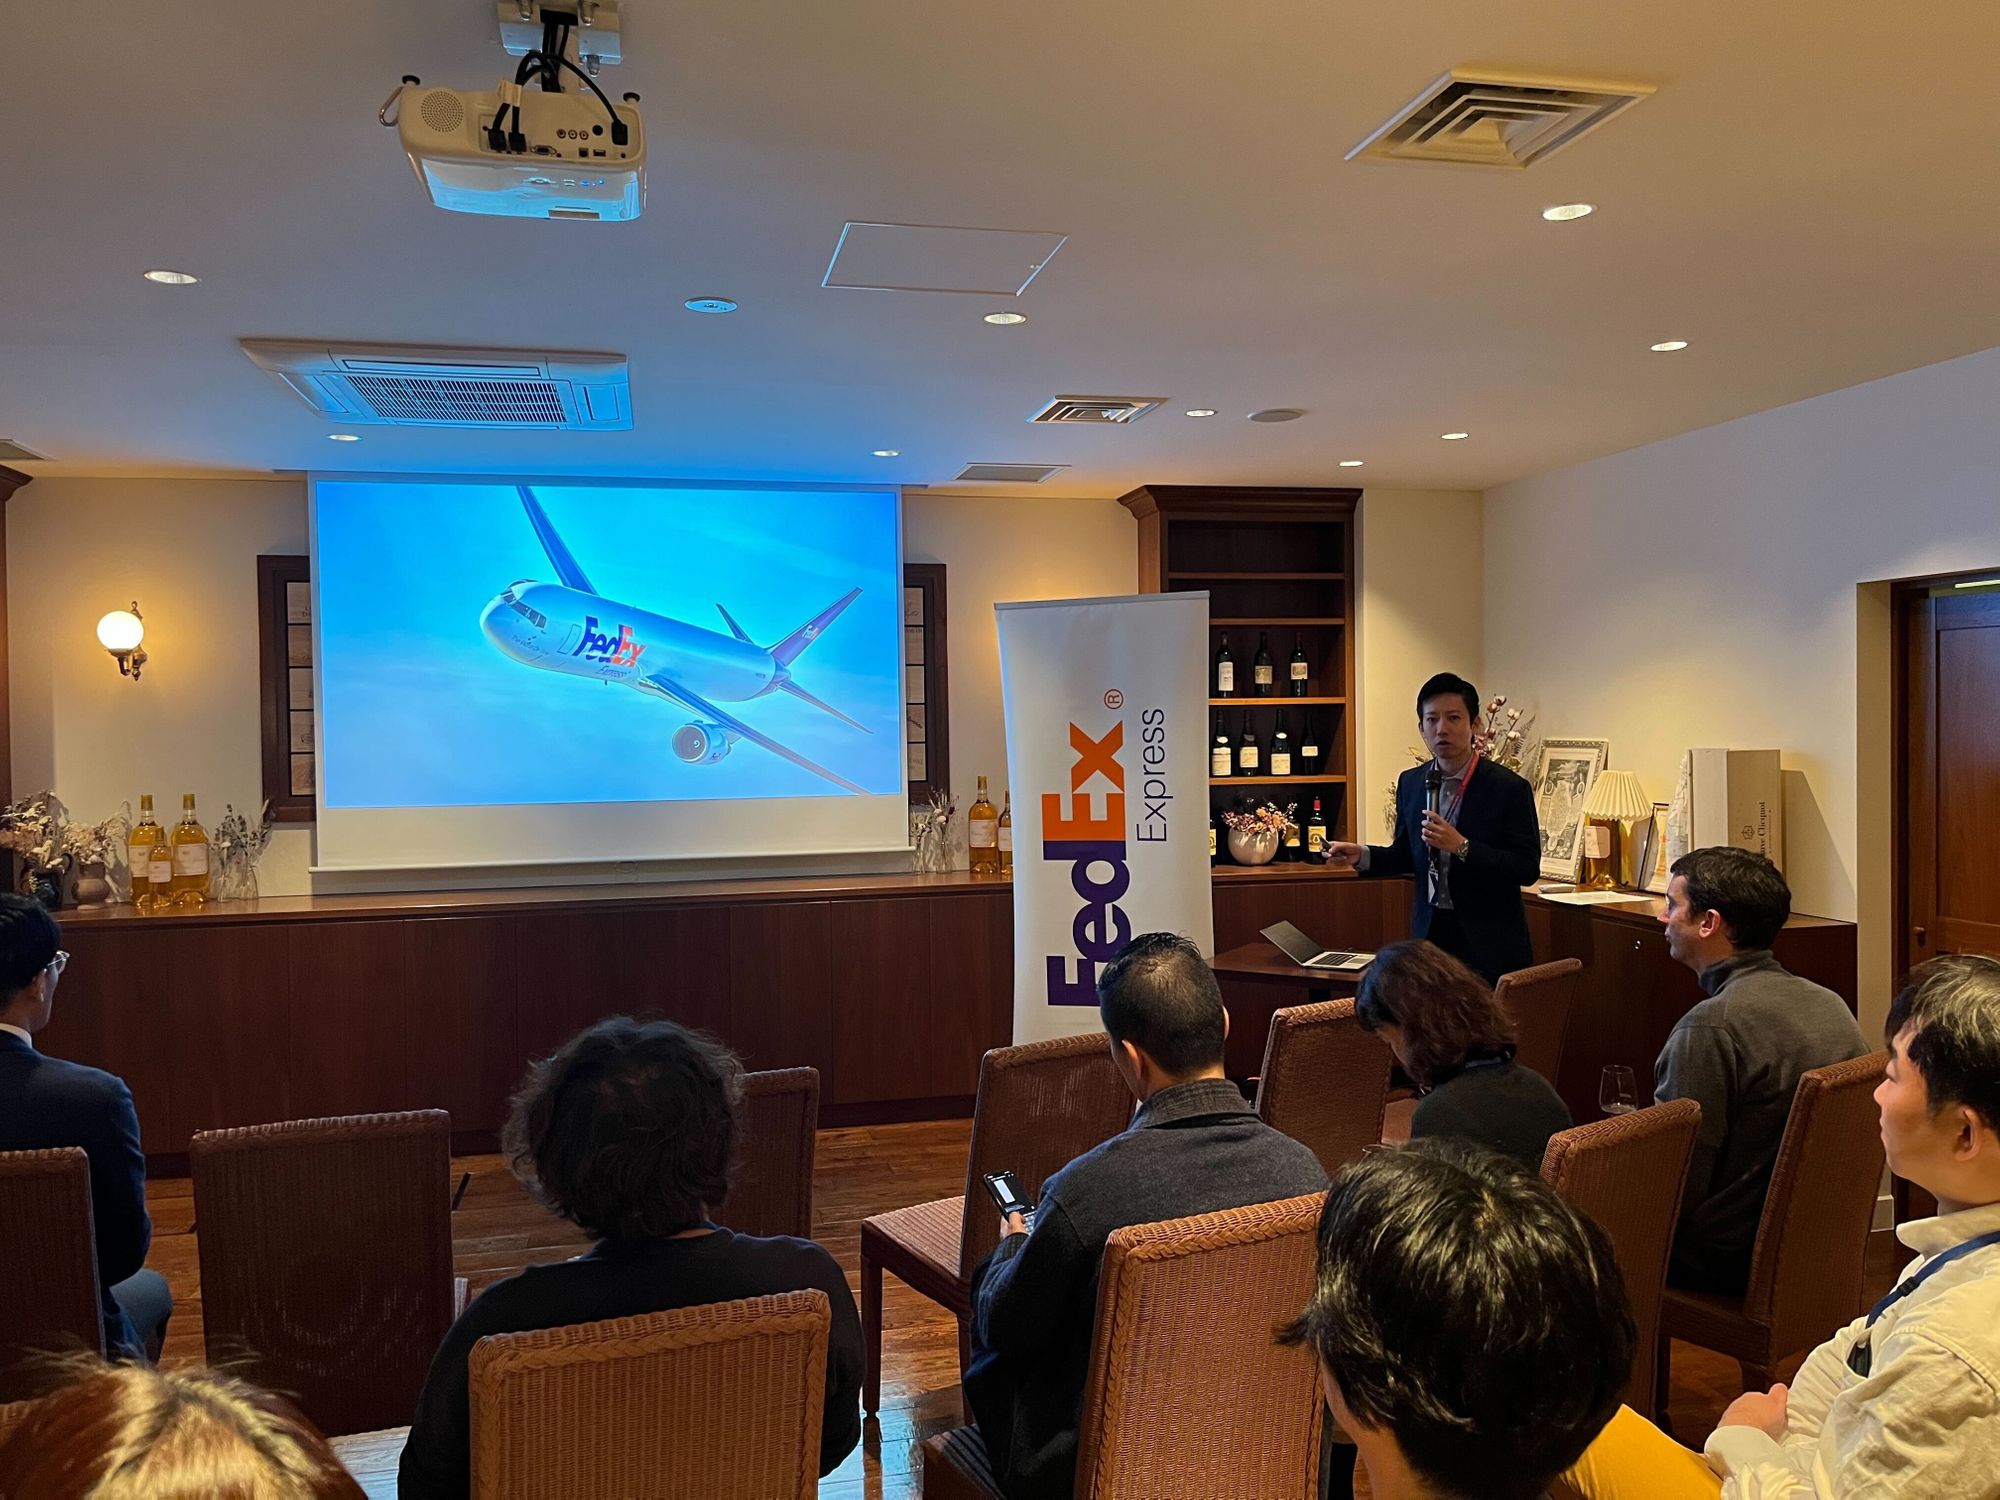 Ship&coが主催した「Ship&coセミナー in 東京」では、中堅・大企業向けのEC物流に焦点を当てたイベントが開催されました。 l イベント報告